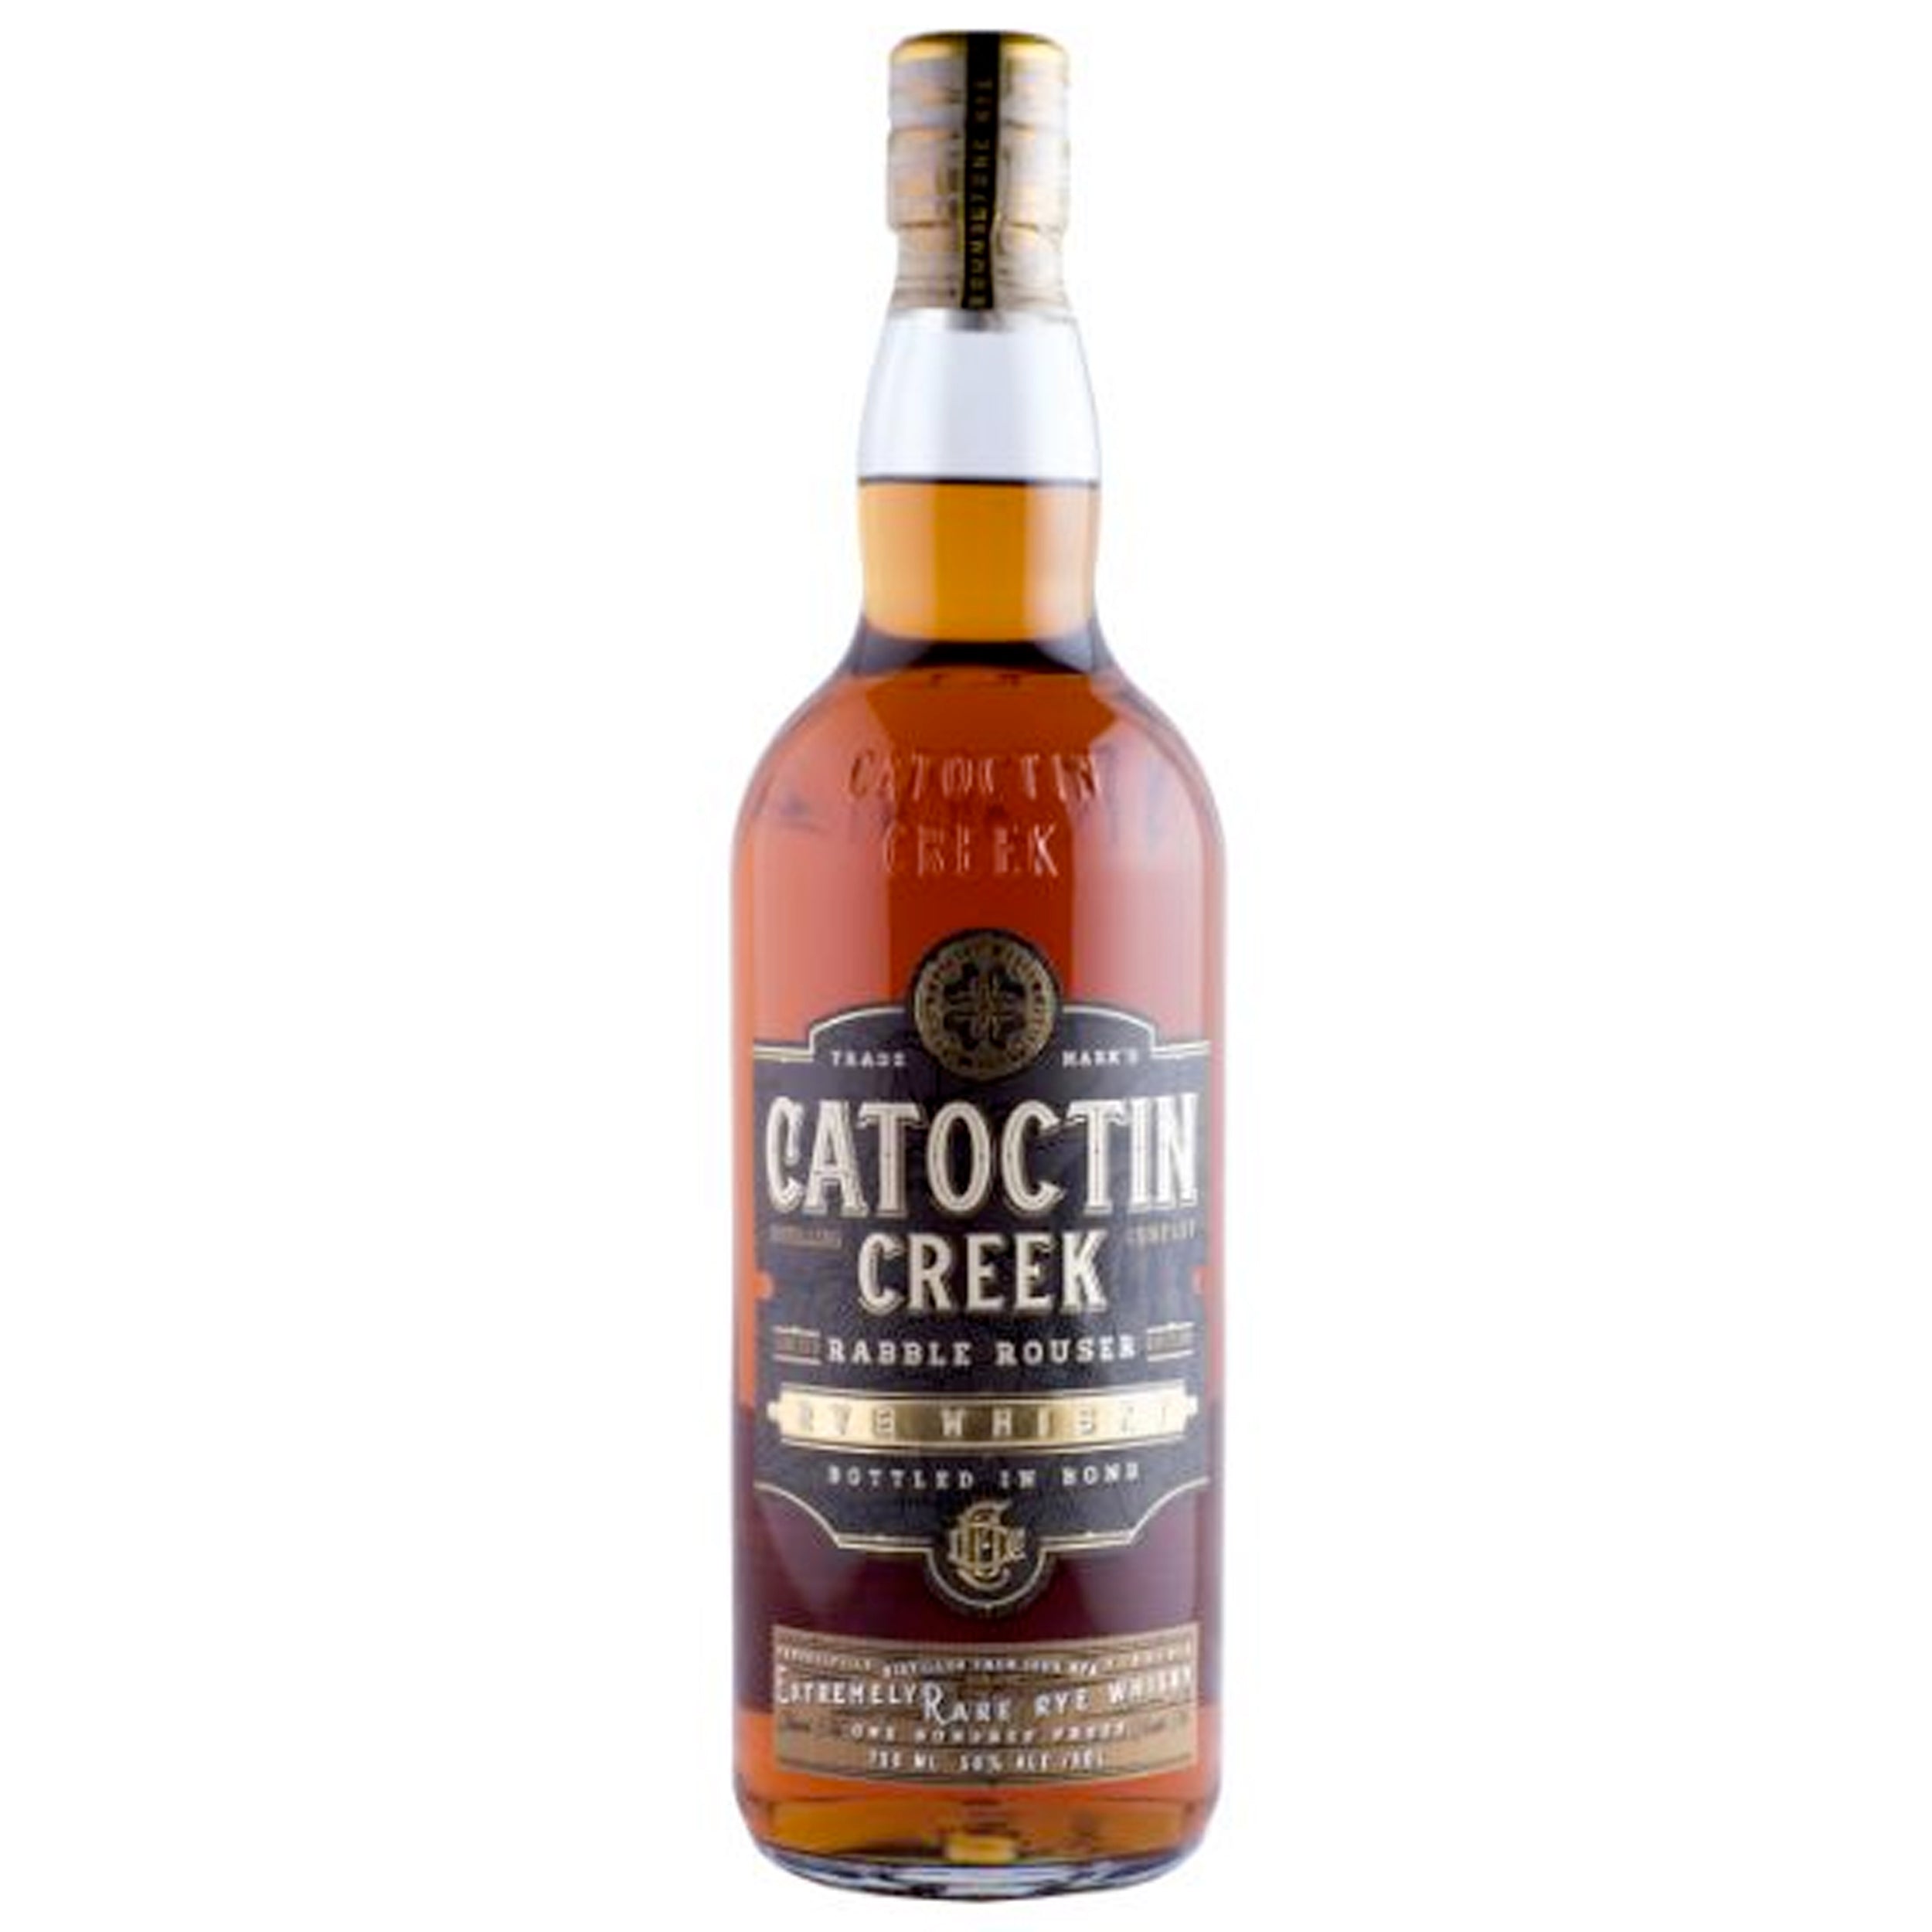 Catoctin Creek Rabble Rouser Rye Bottled in Bond